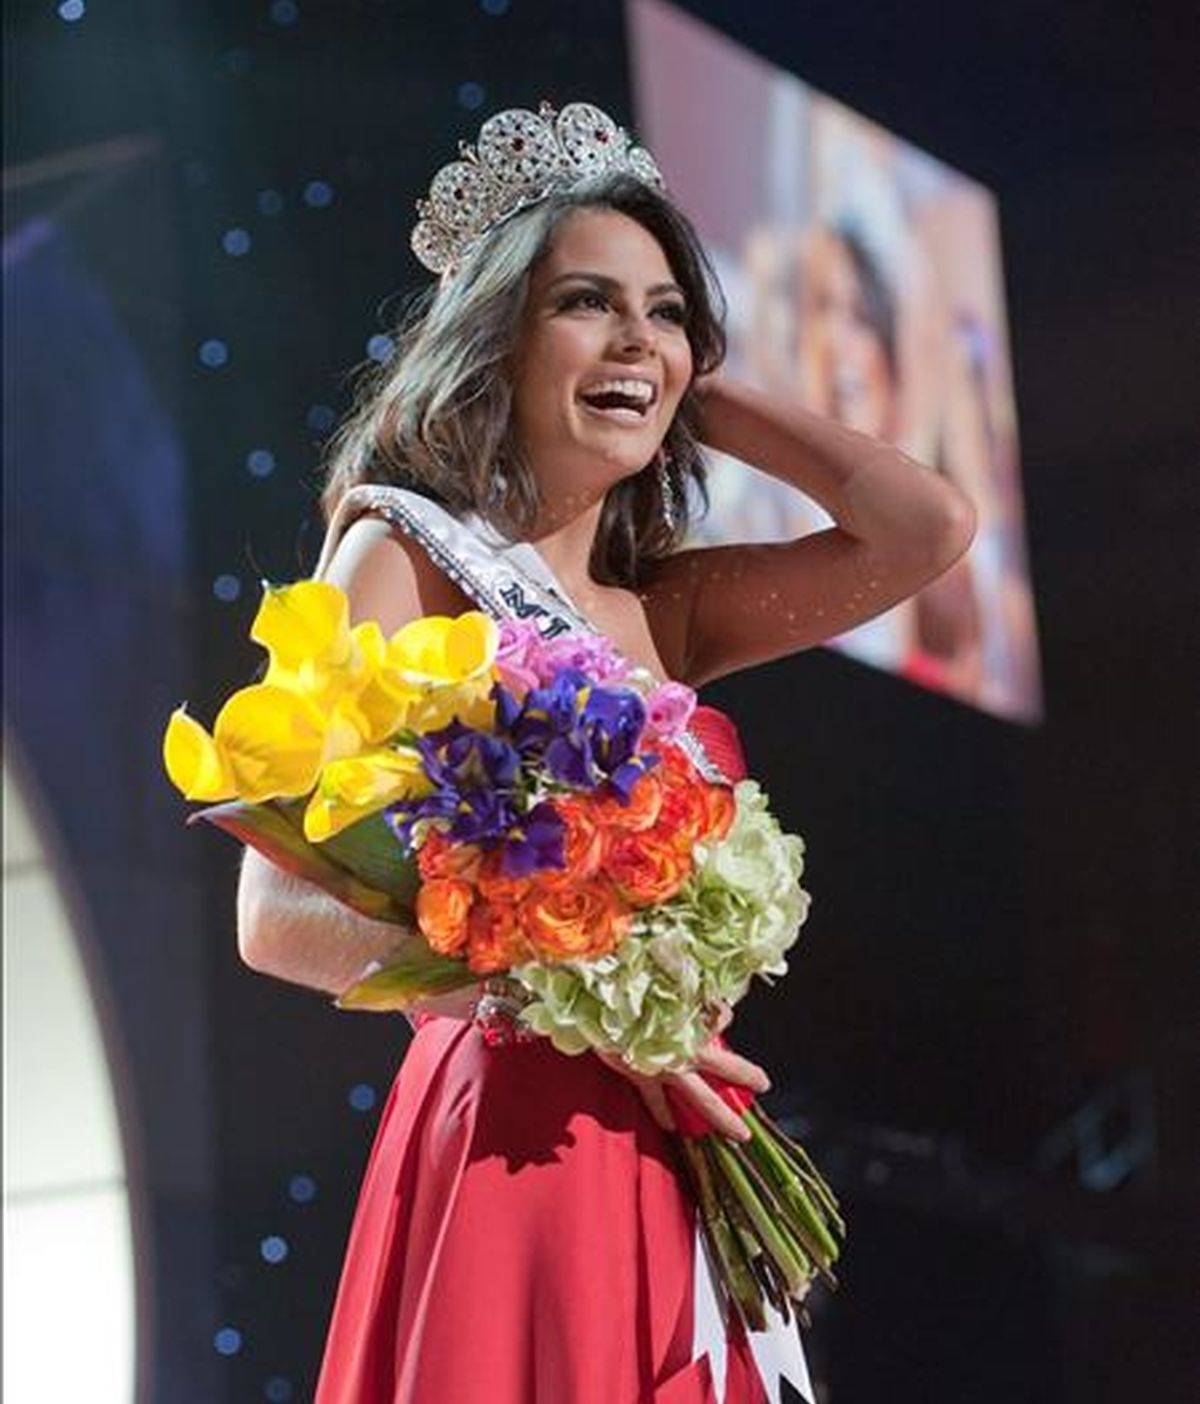 La candidata de México, Jimena Navarrete, es coronada Miss Universo 2010. Video: Informativos Telecinco